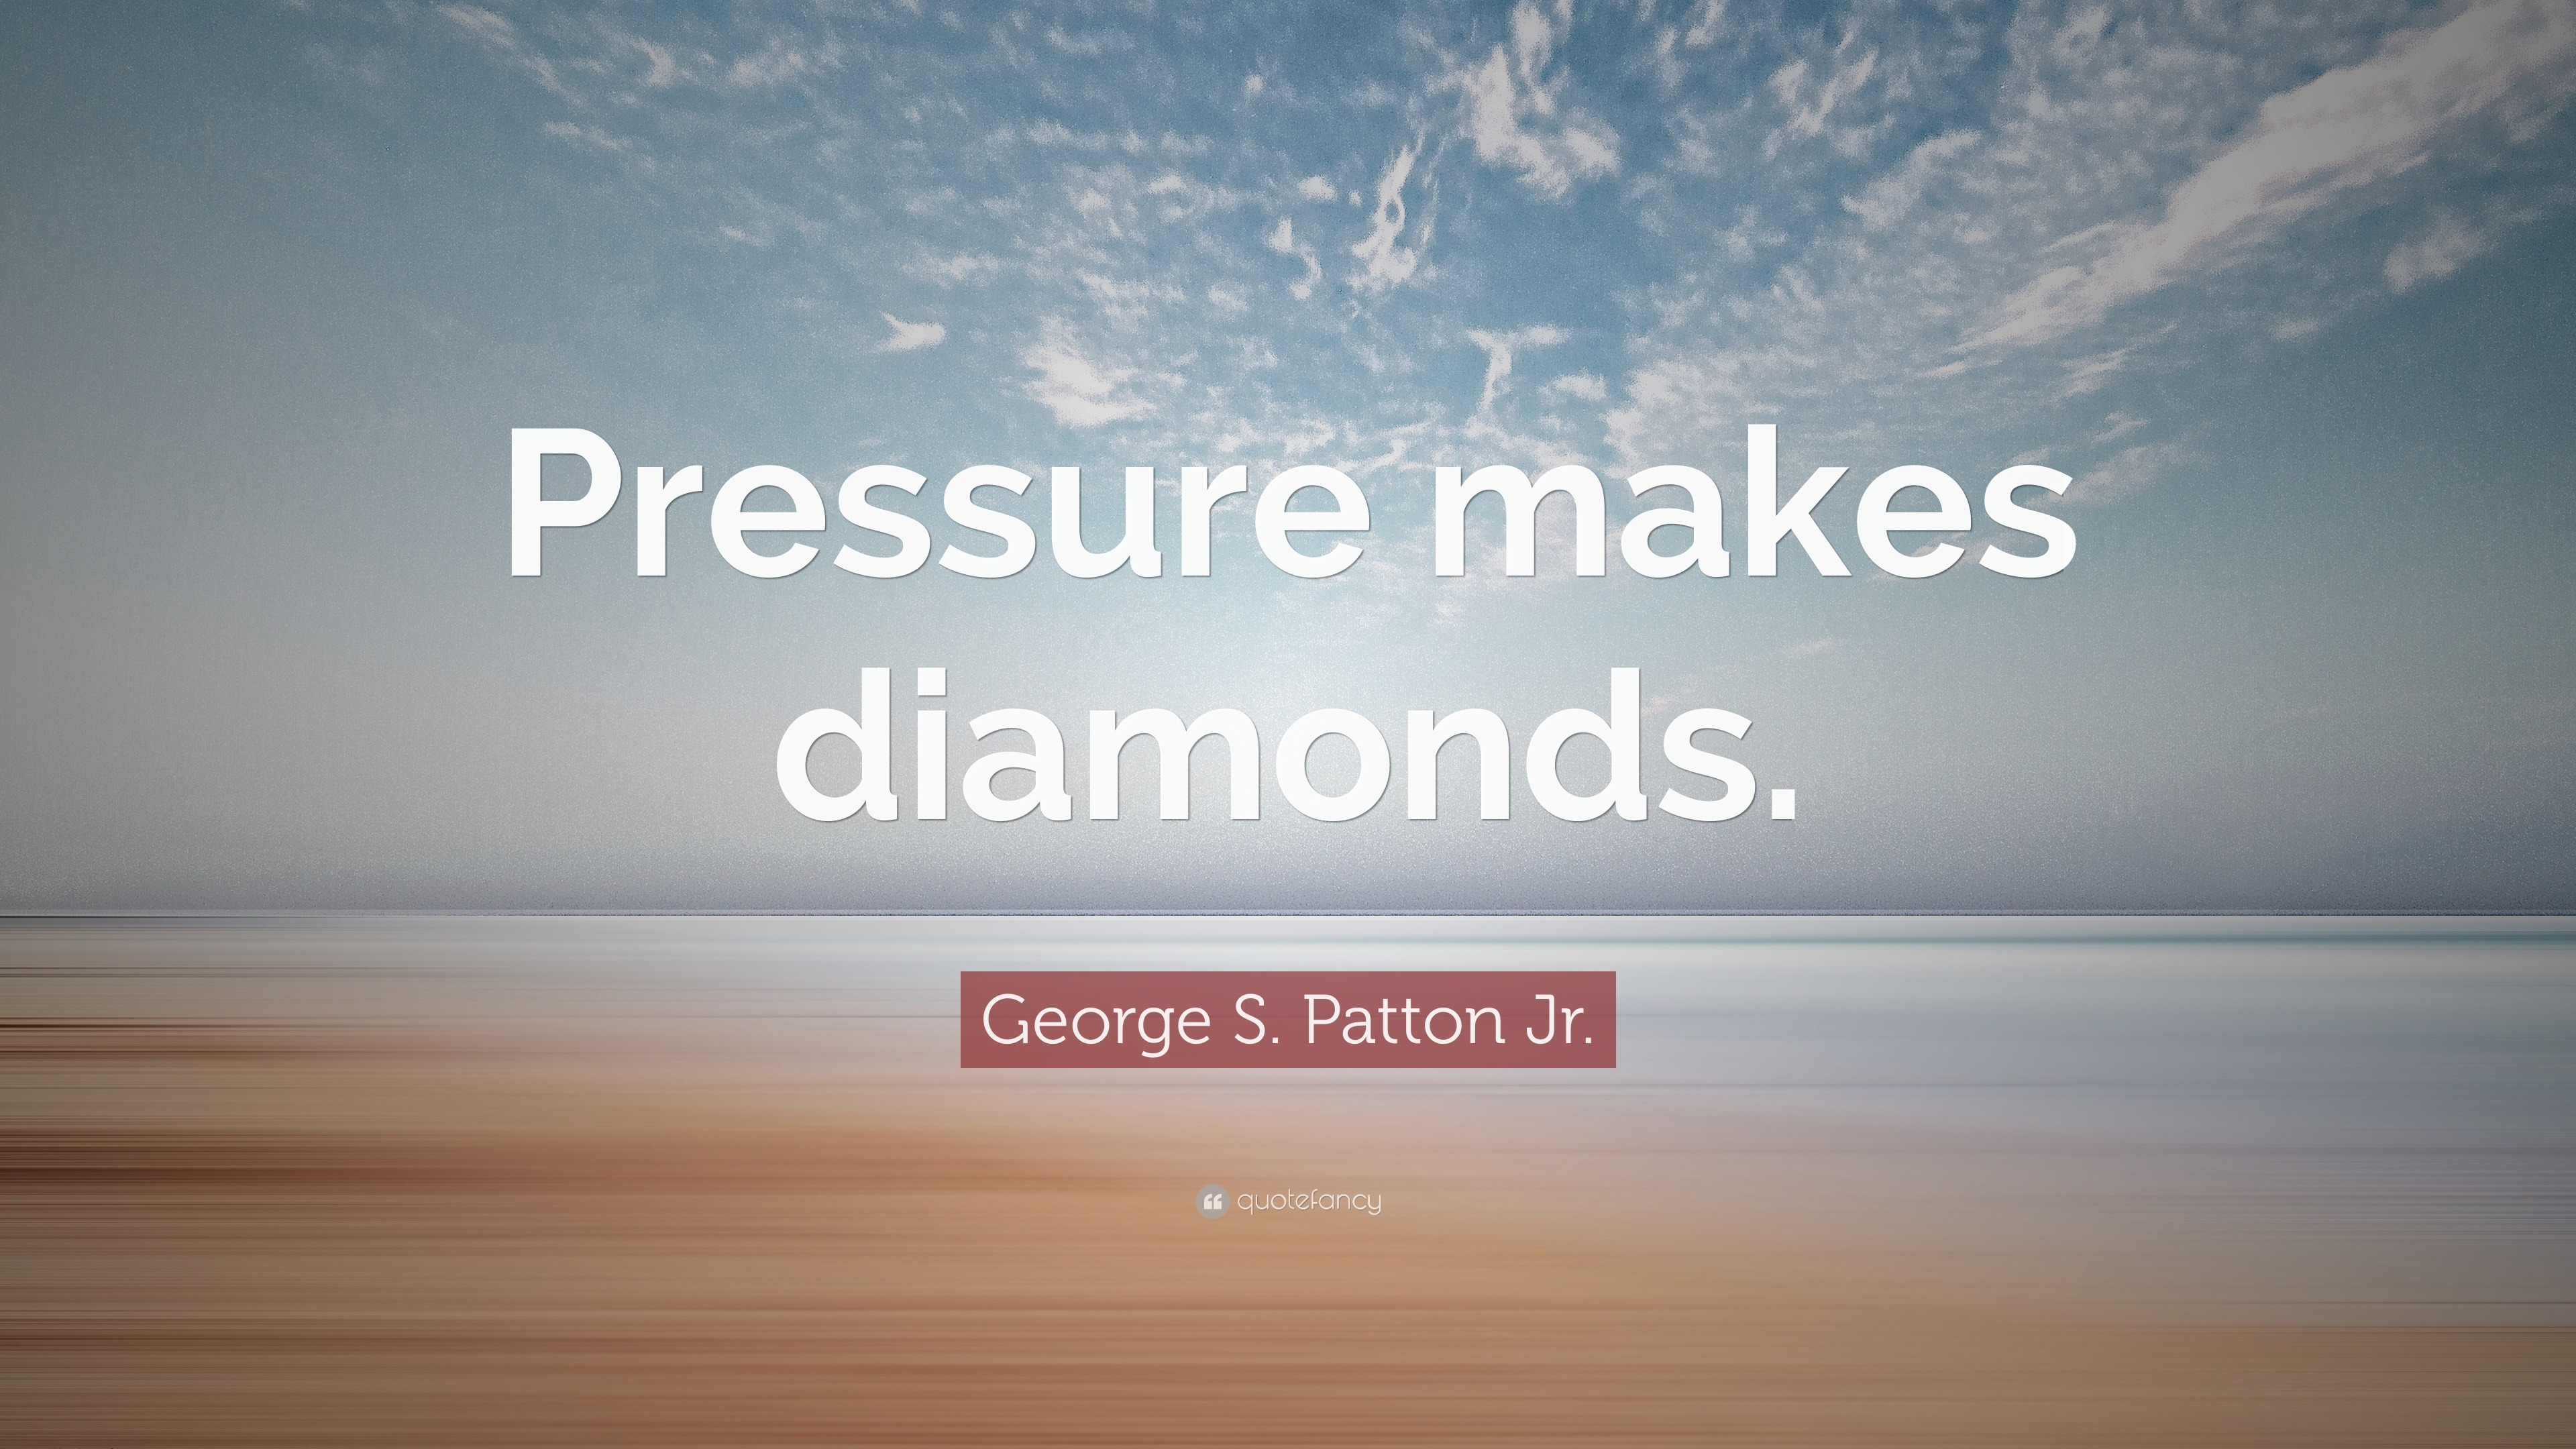 S. Patton Jr. Quote “Pressure makes diamonds.”